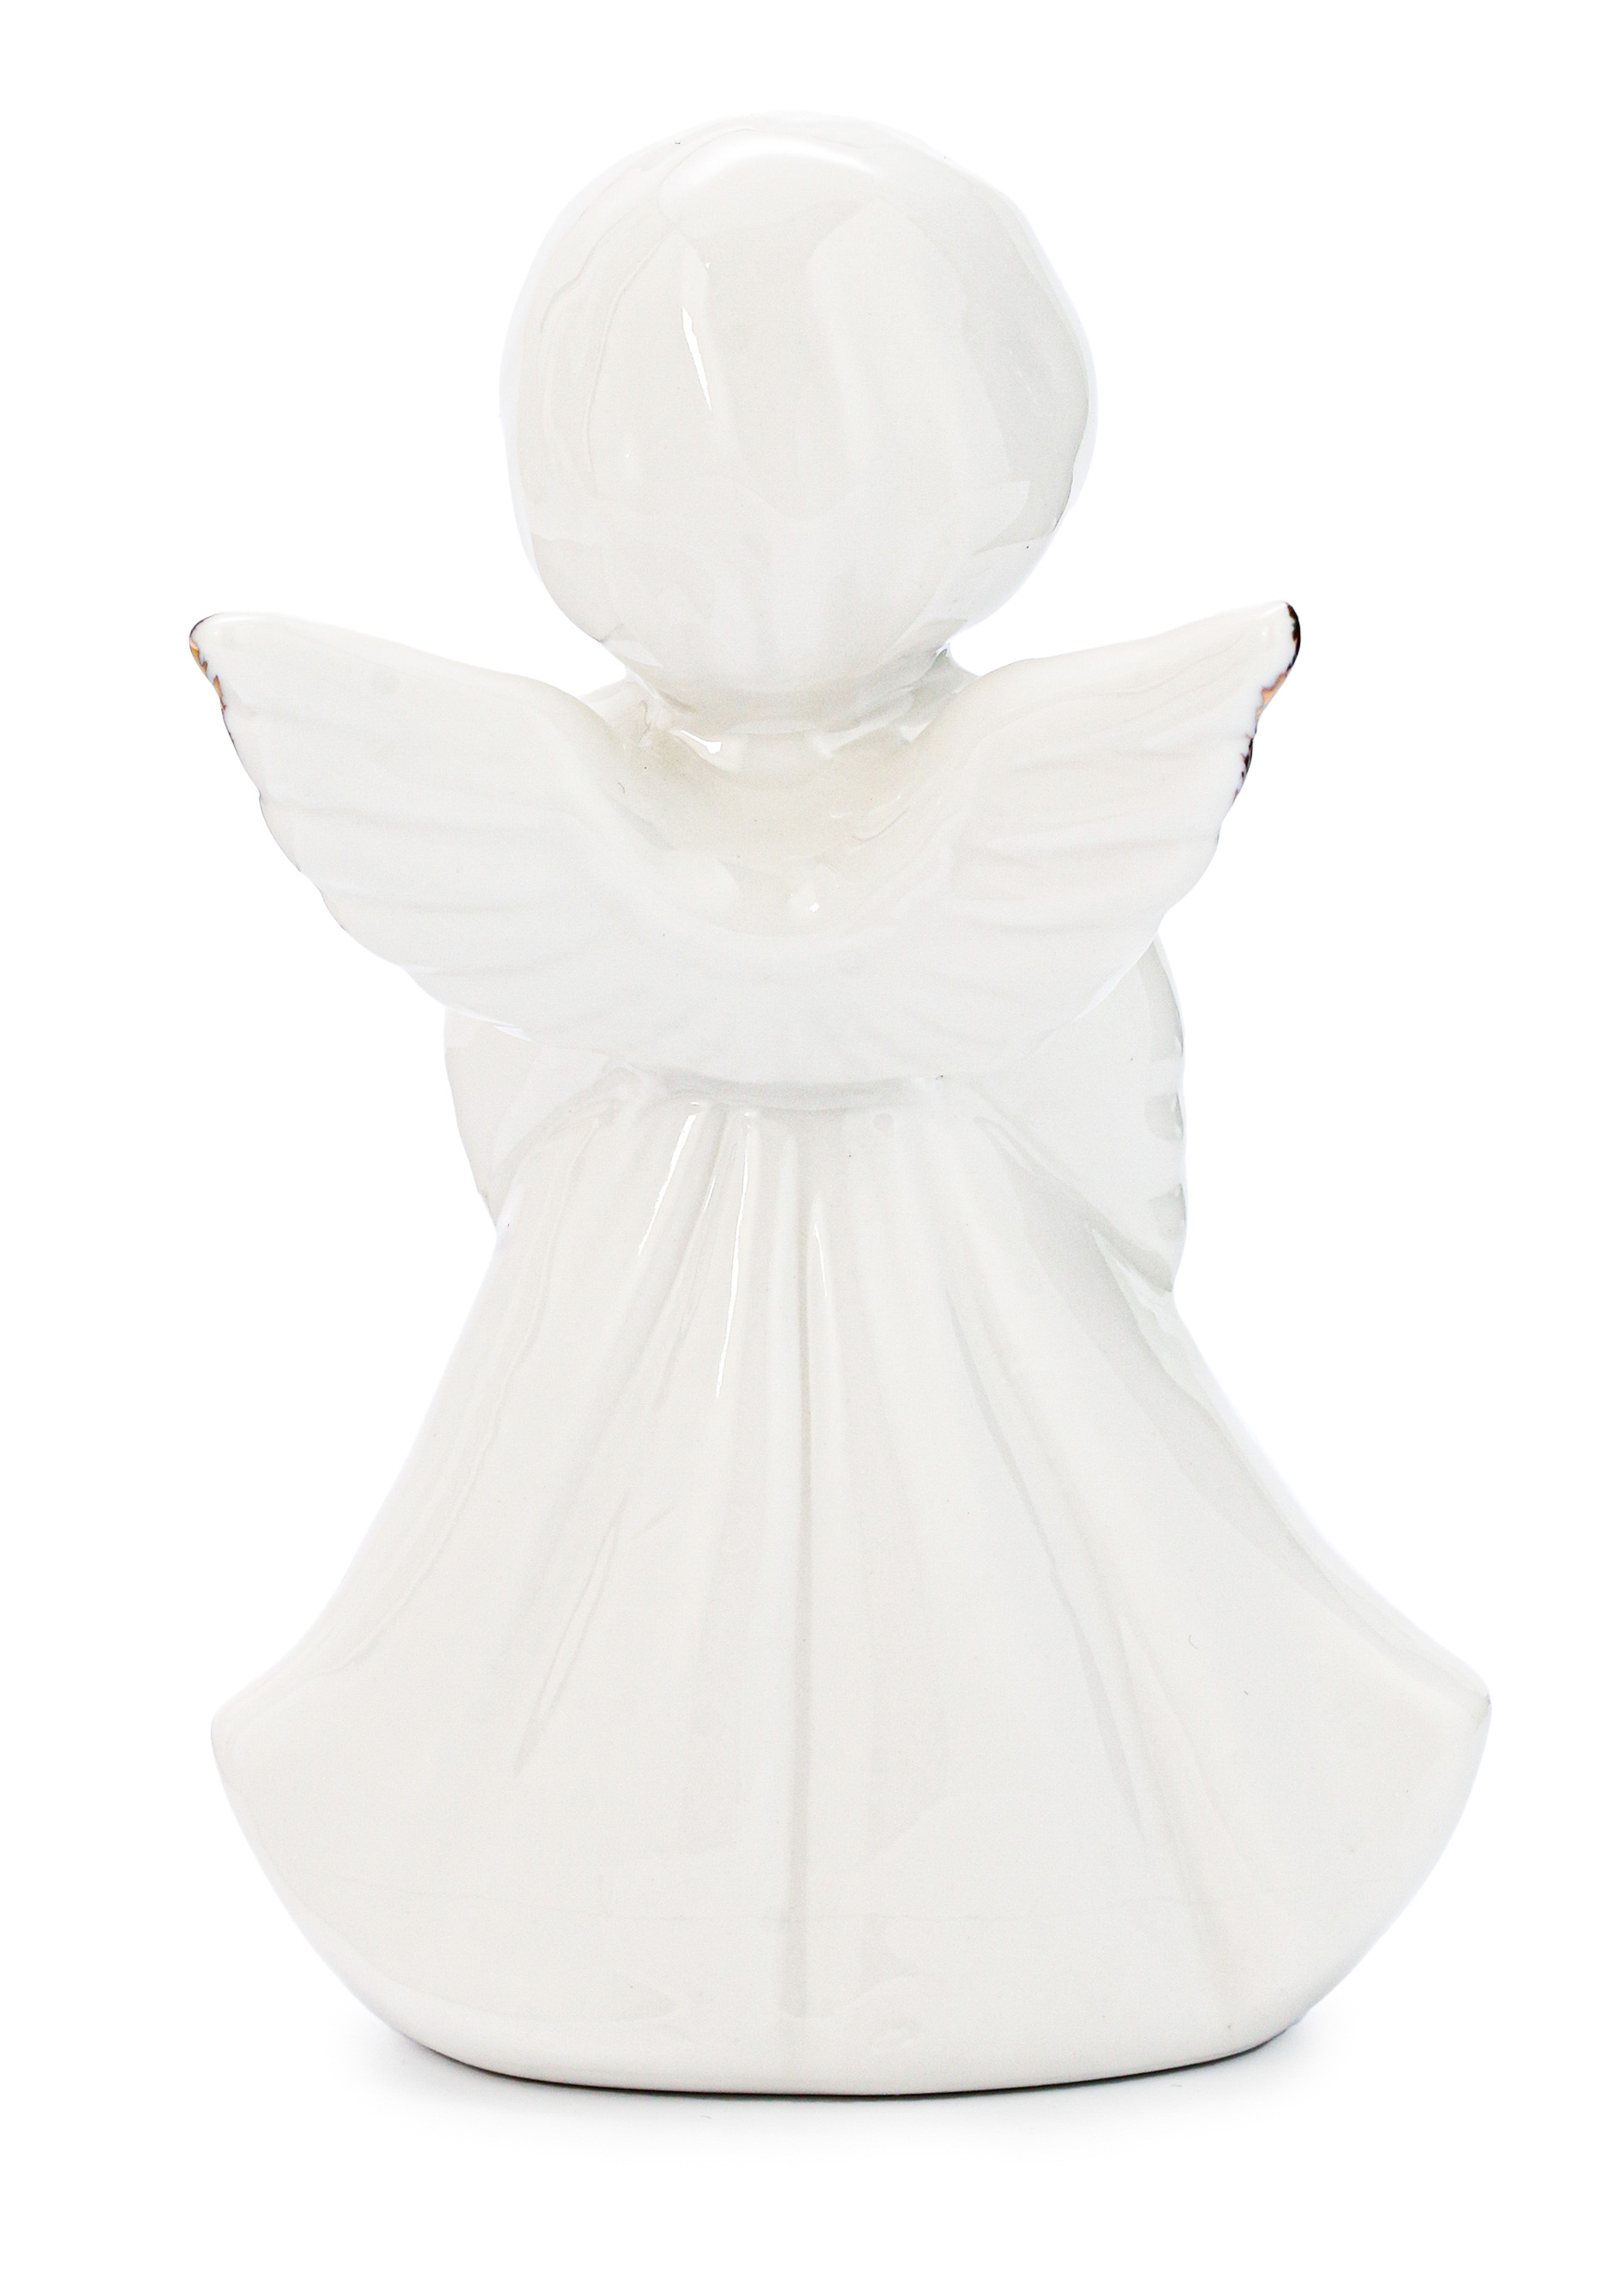 Статуэтка "Ангел с иконой" Lefard, цвет белый, размер 10 см - фото 7